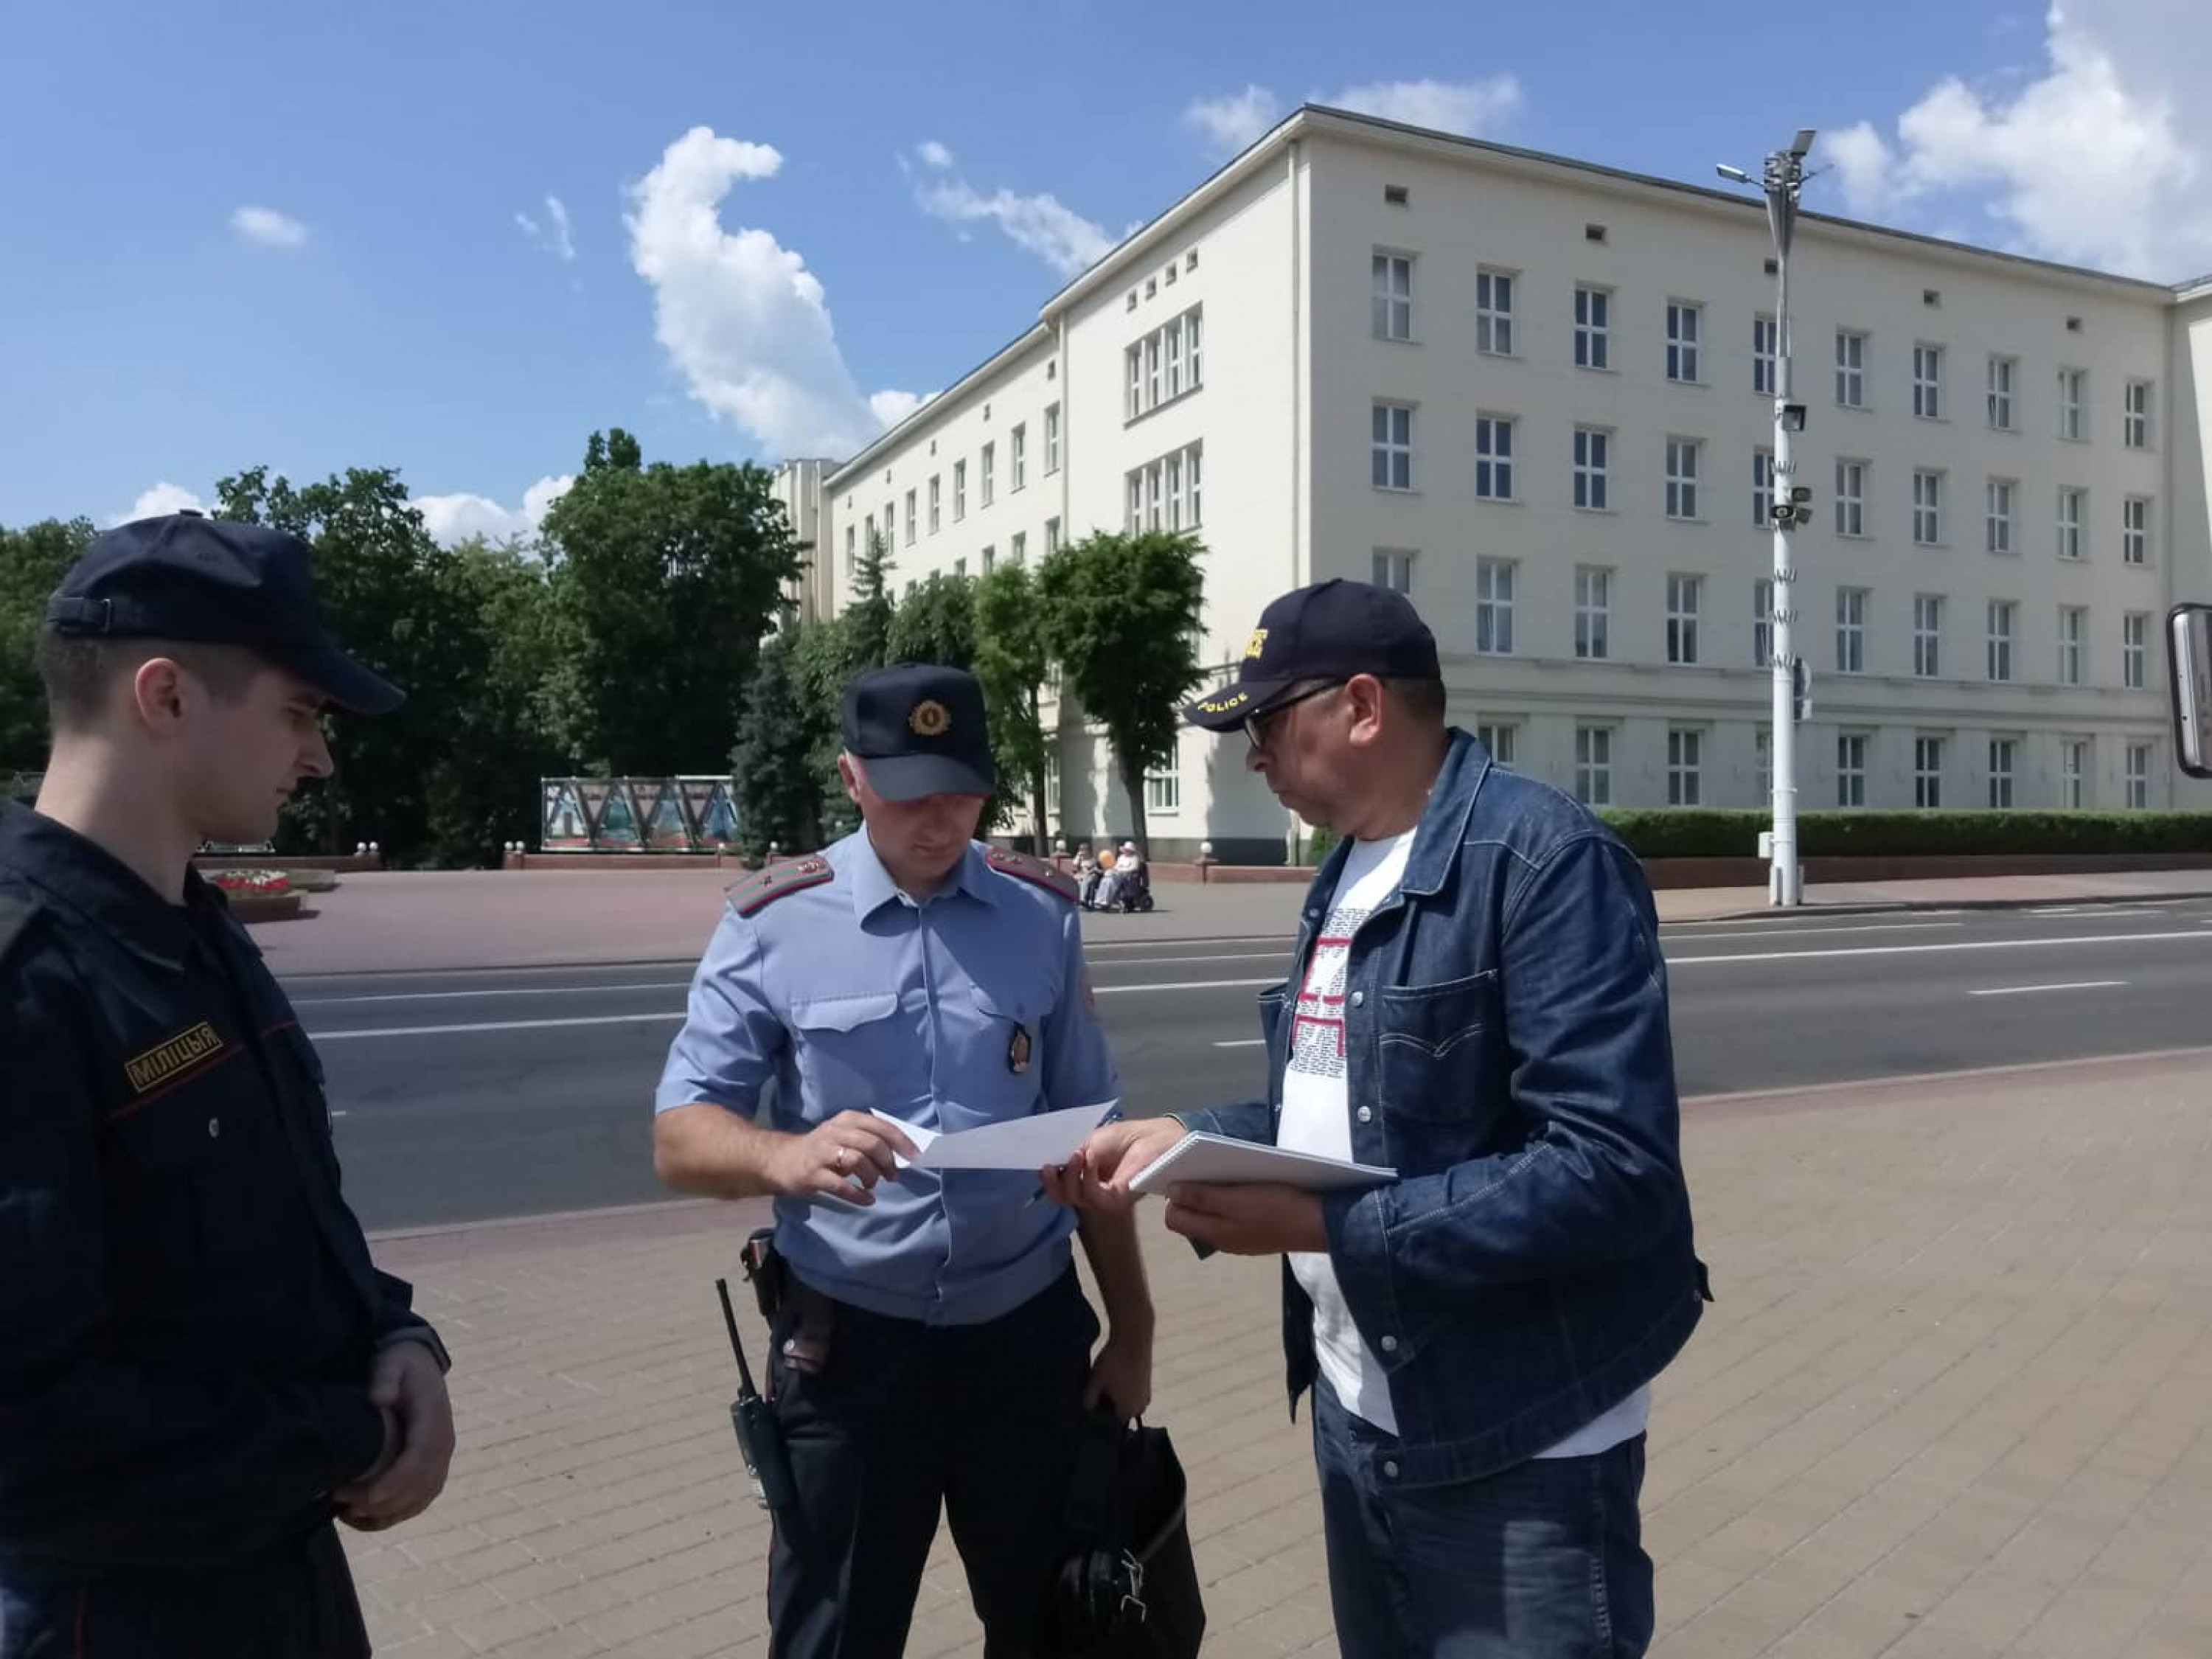 Сергей Петрухин пытается вручить заявление сотрудникам милиции. Фото Владимира Величкина.